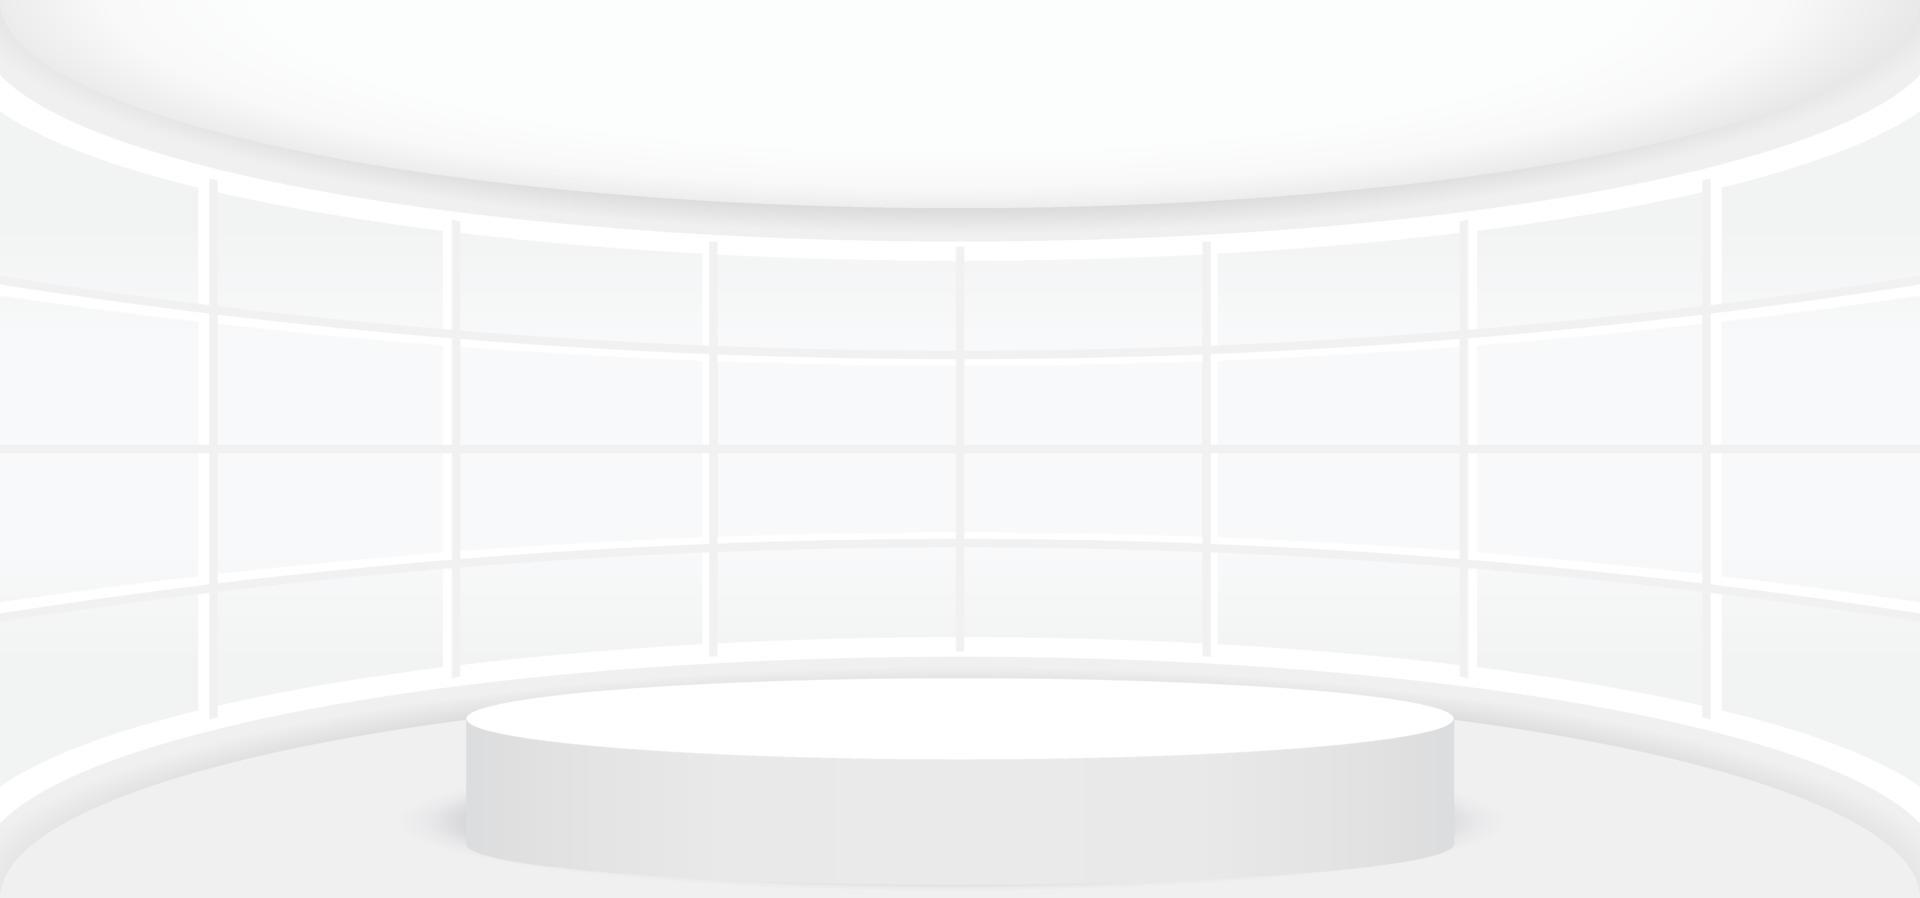 salle blanche vide avec scène ou podium rond blanc pour l'affichage, la présentation, la maquette, le piédestal de scène ou le produit de montage. illustration vectorielle de modèle intérieur 3d abstrait pour le fond. vecteur